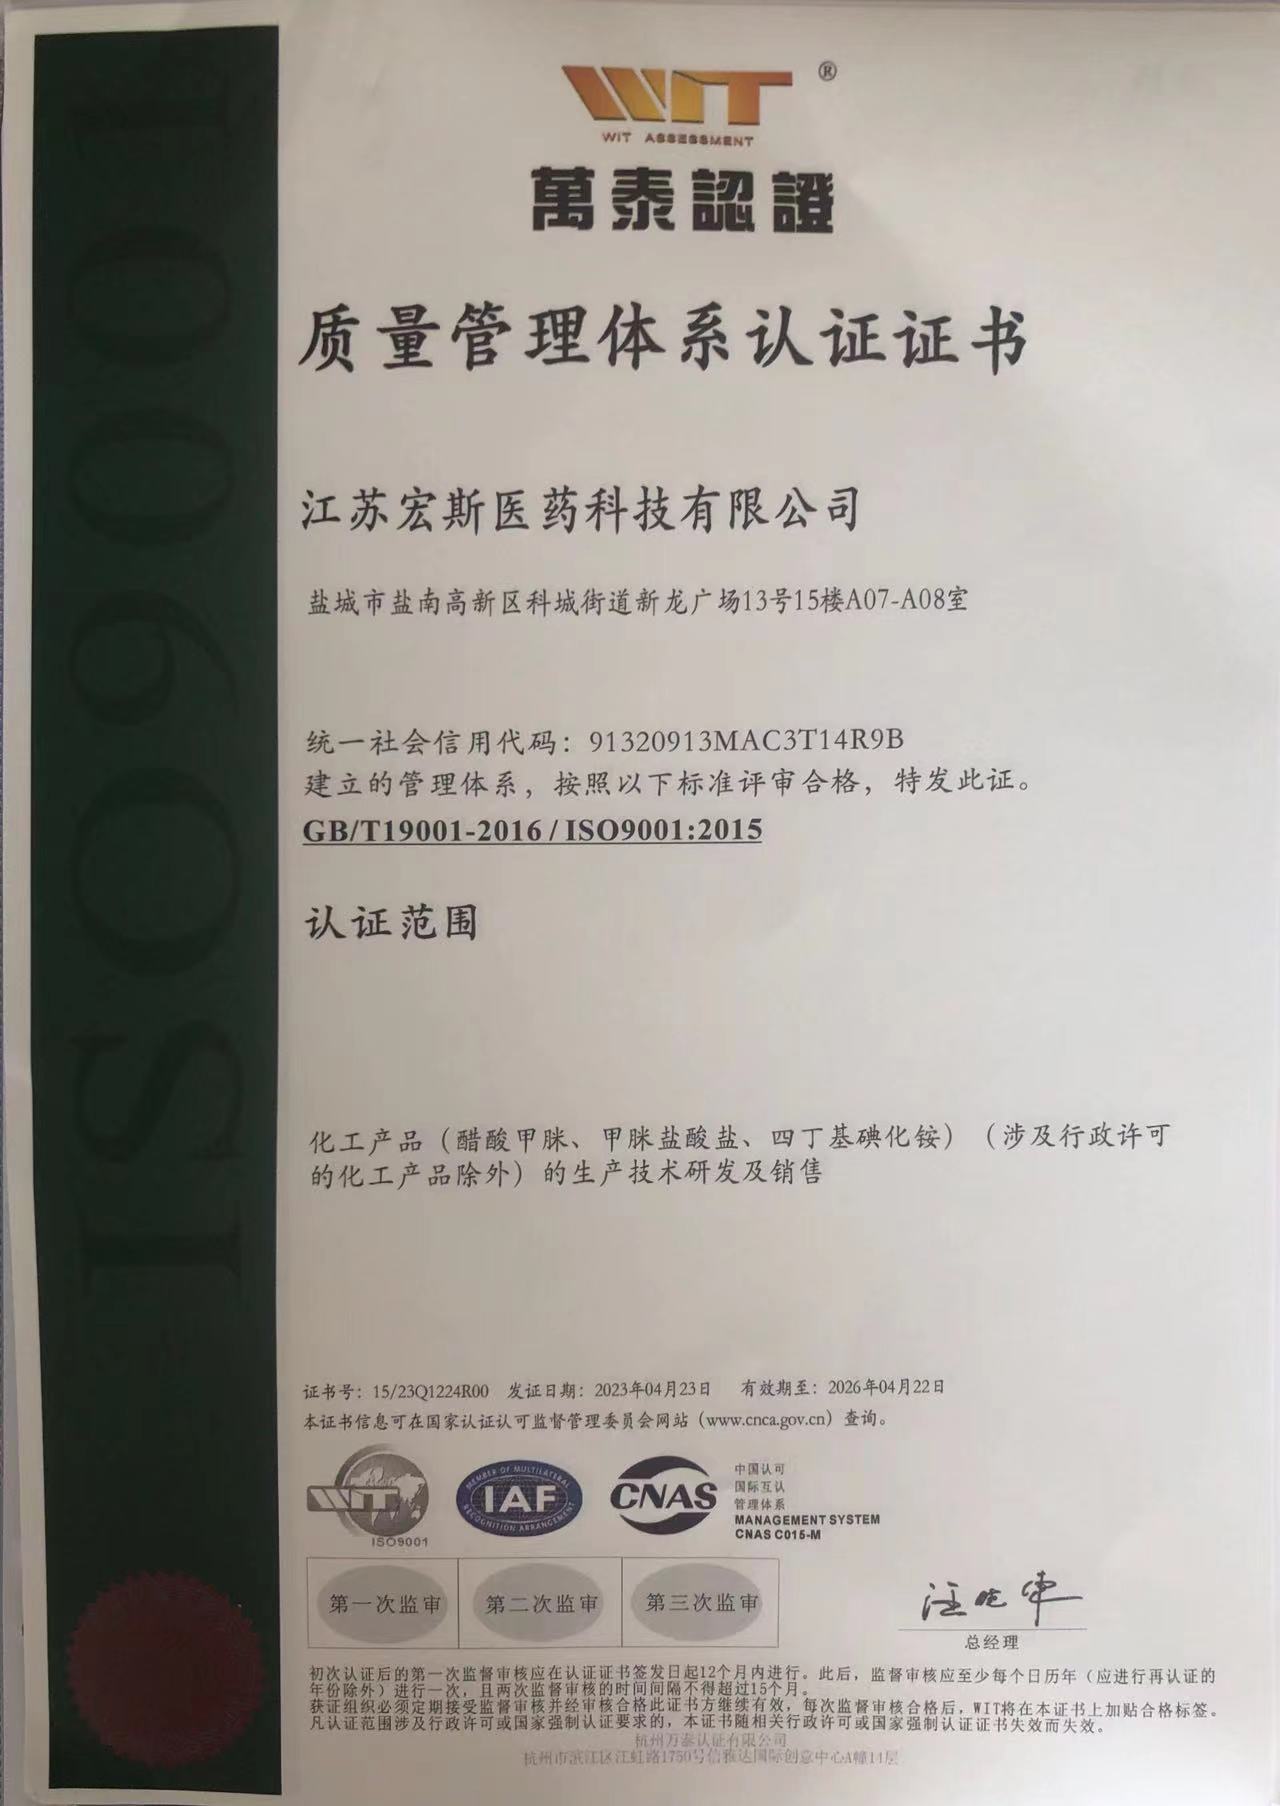 Berotasunez ospatu Jiangsu Hongsi Medical Technology Co., Ltd.-k arrakastaz gainditu zuen ISO9001: 2015 nazioarteko kalitate sistemaren ziurtagiria